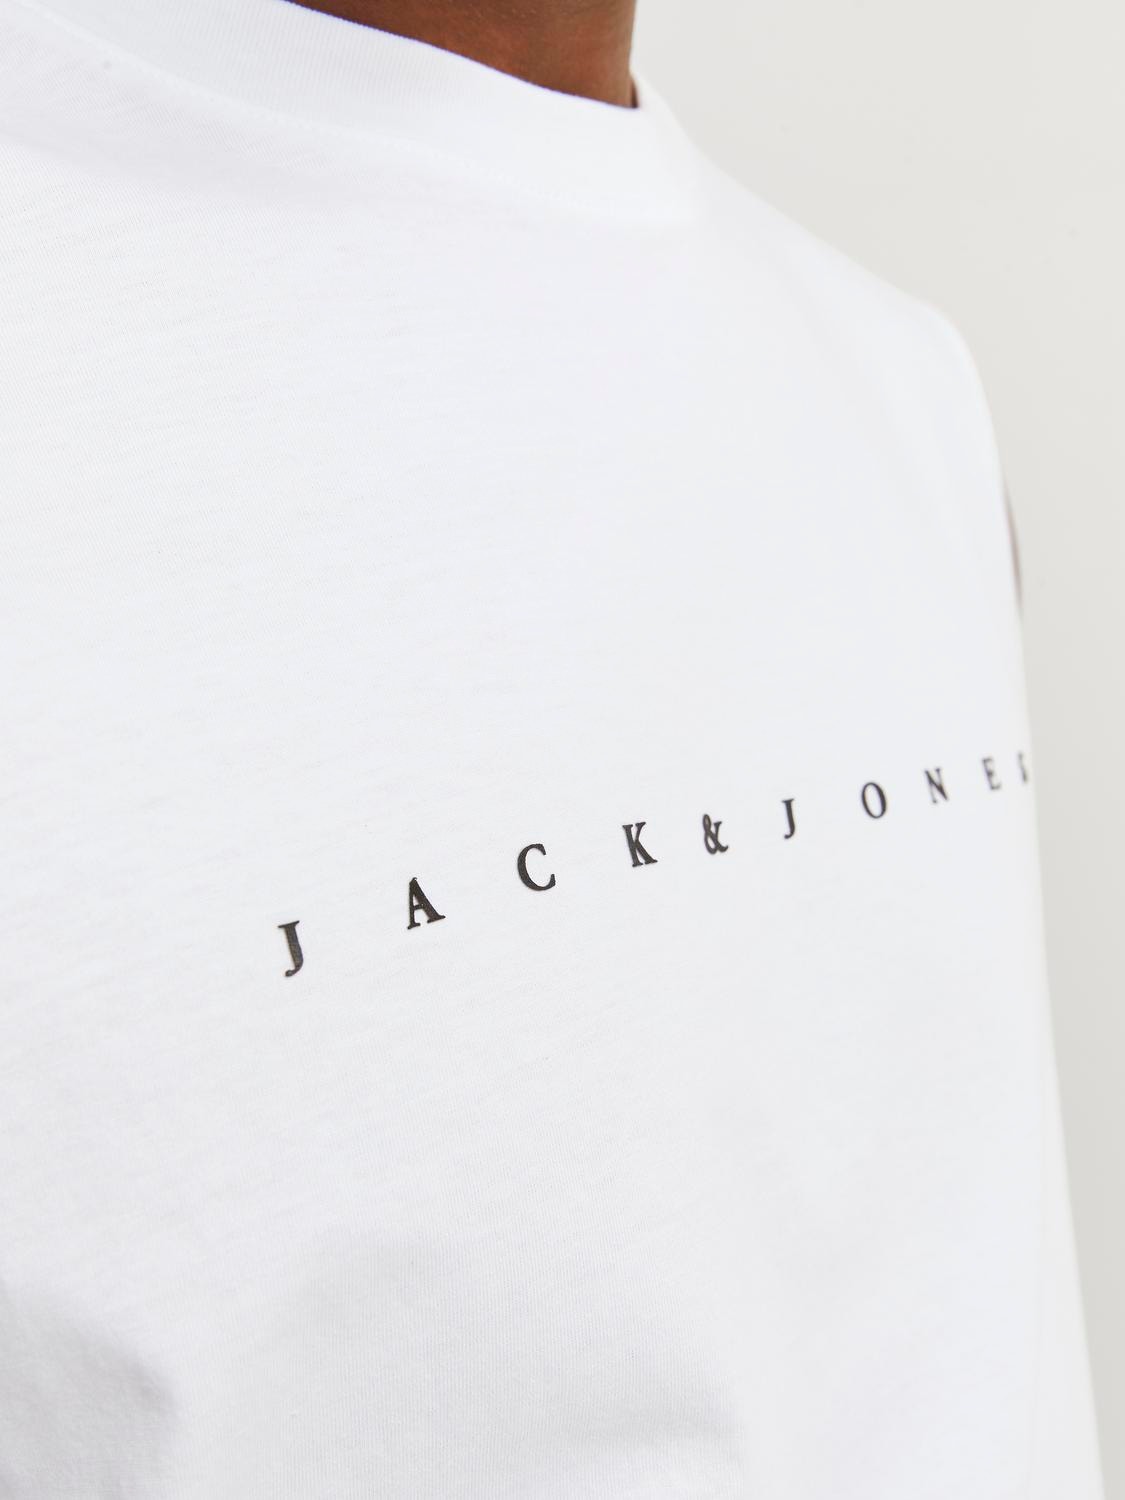 Jack & Jones Printed Crew neck Tank top -White - 12249131